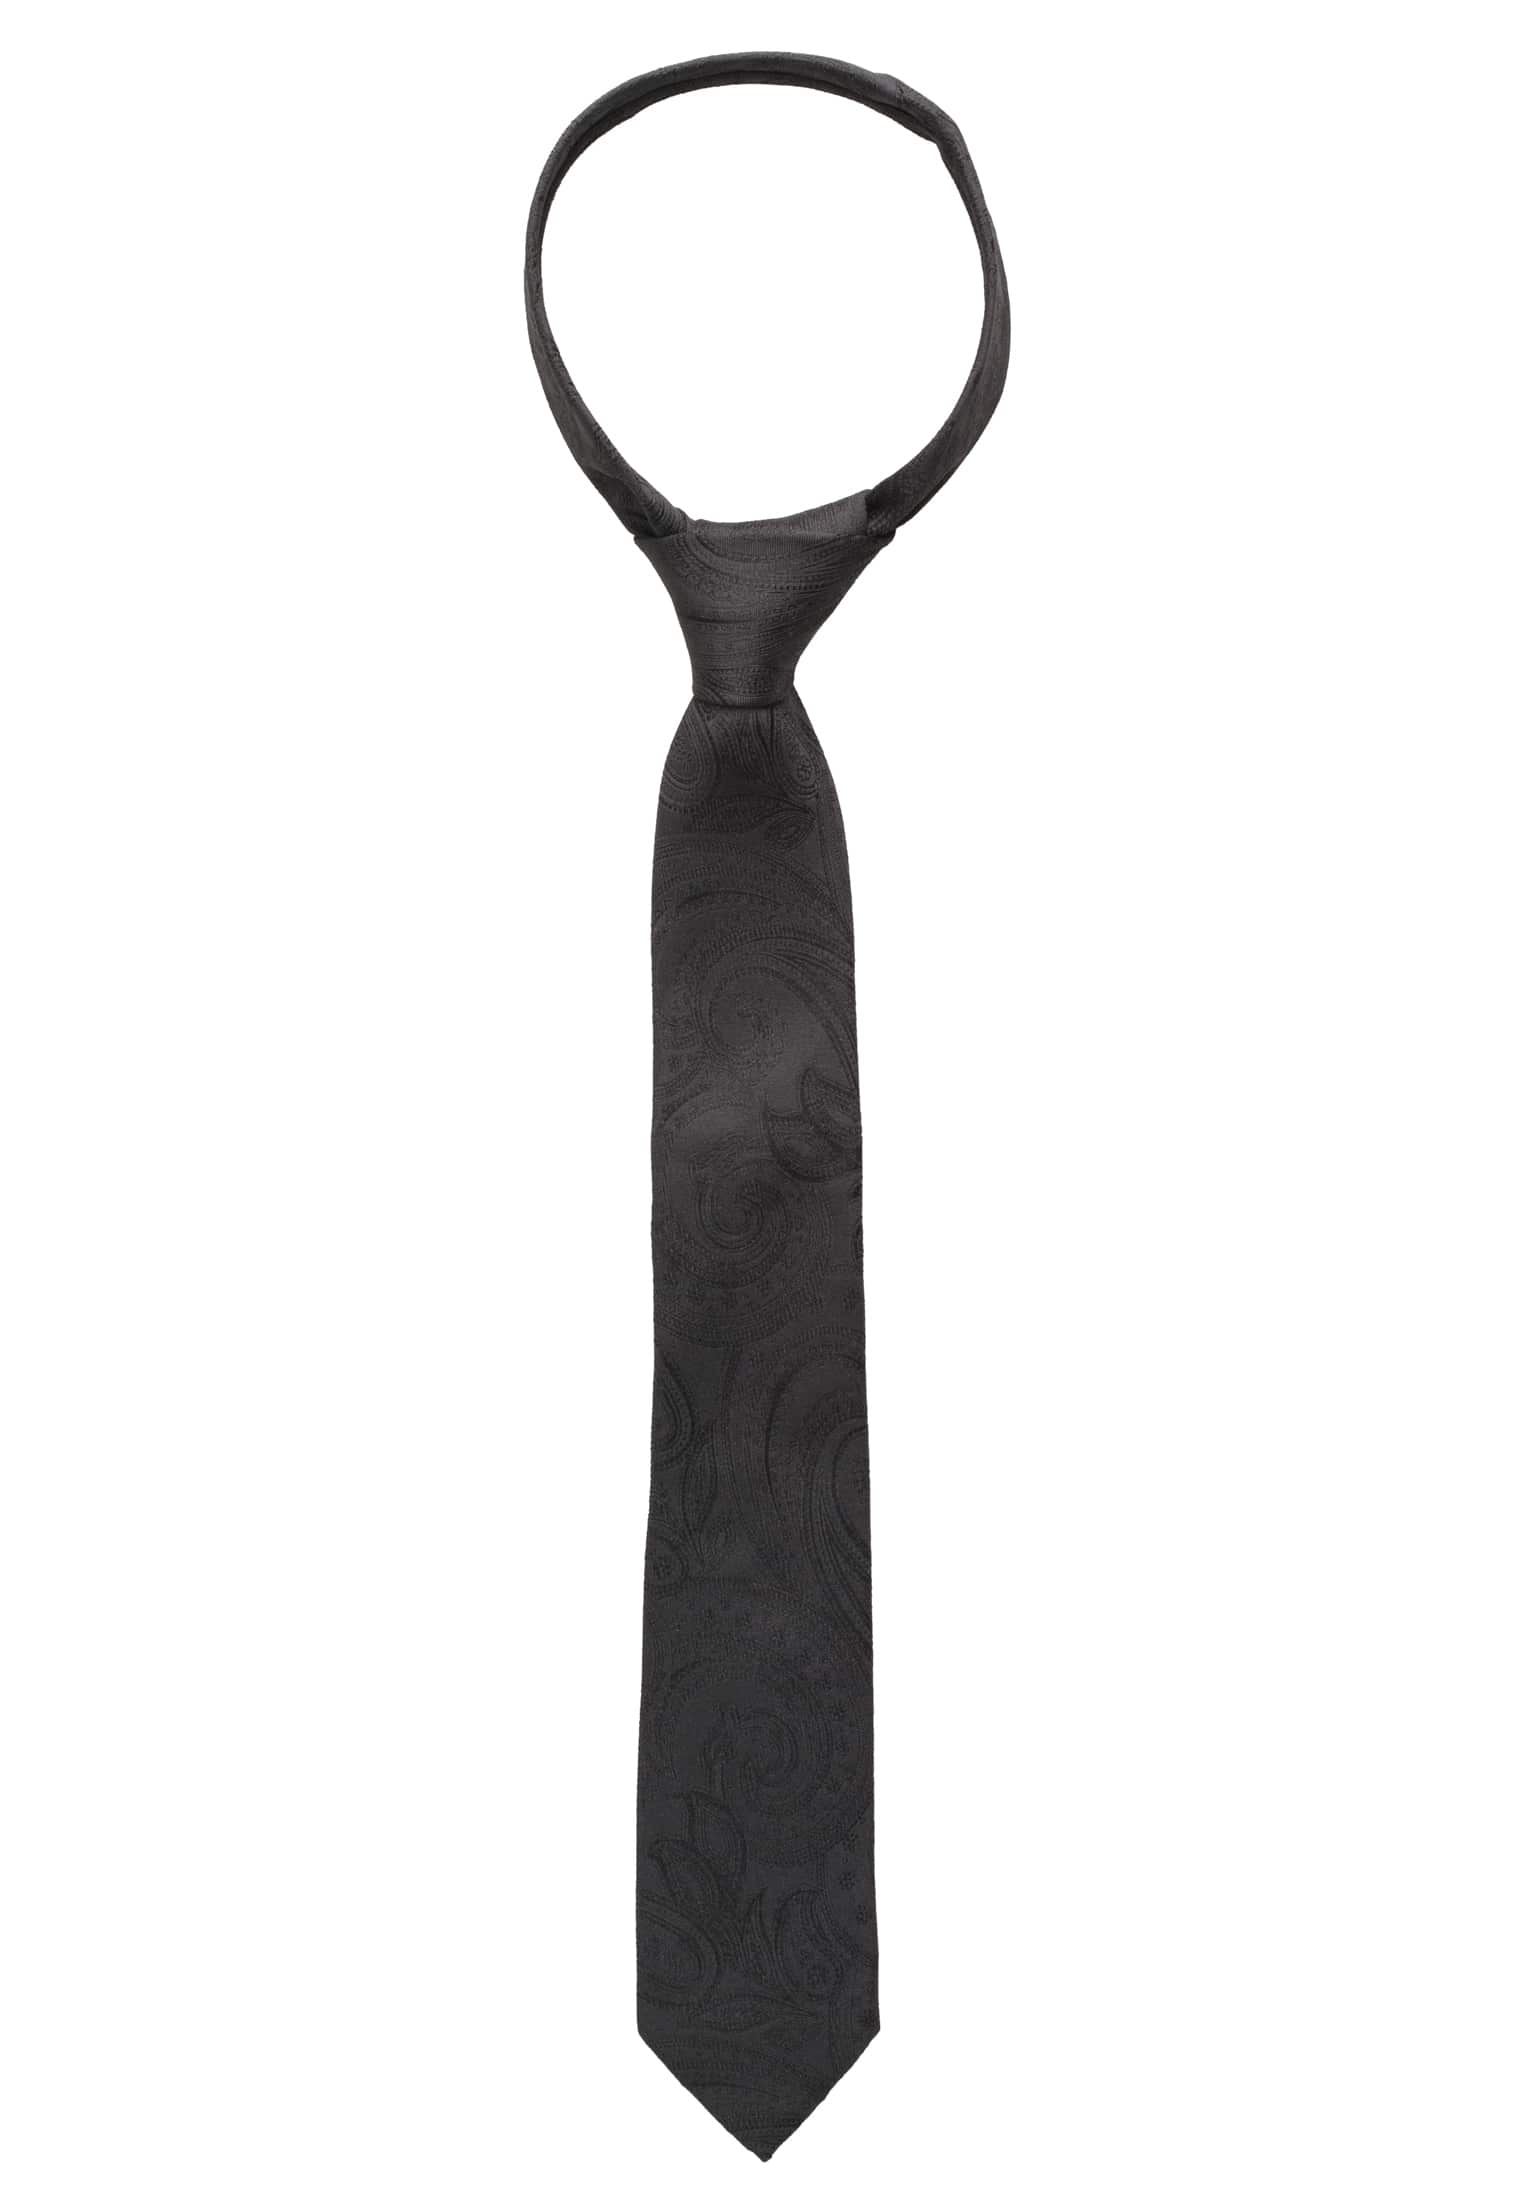 Krawatte in | schwarz 160 | schwarz gemustert 1AC01869-03-91-160 